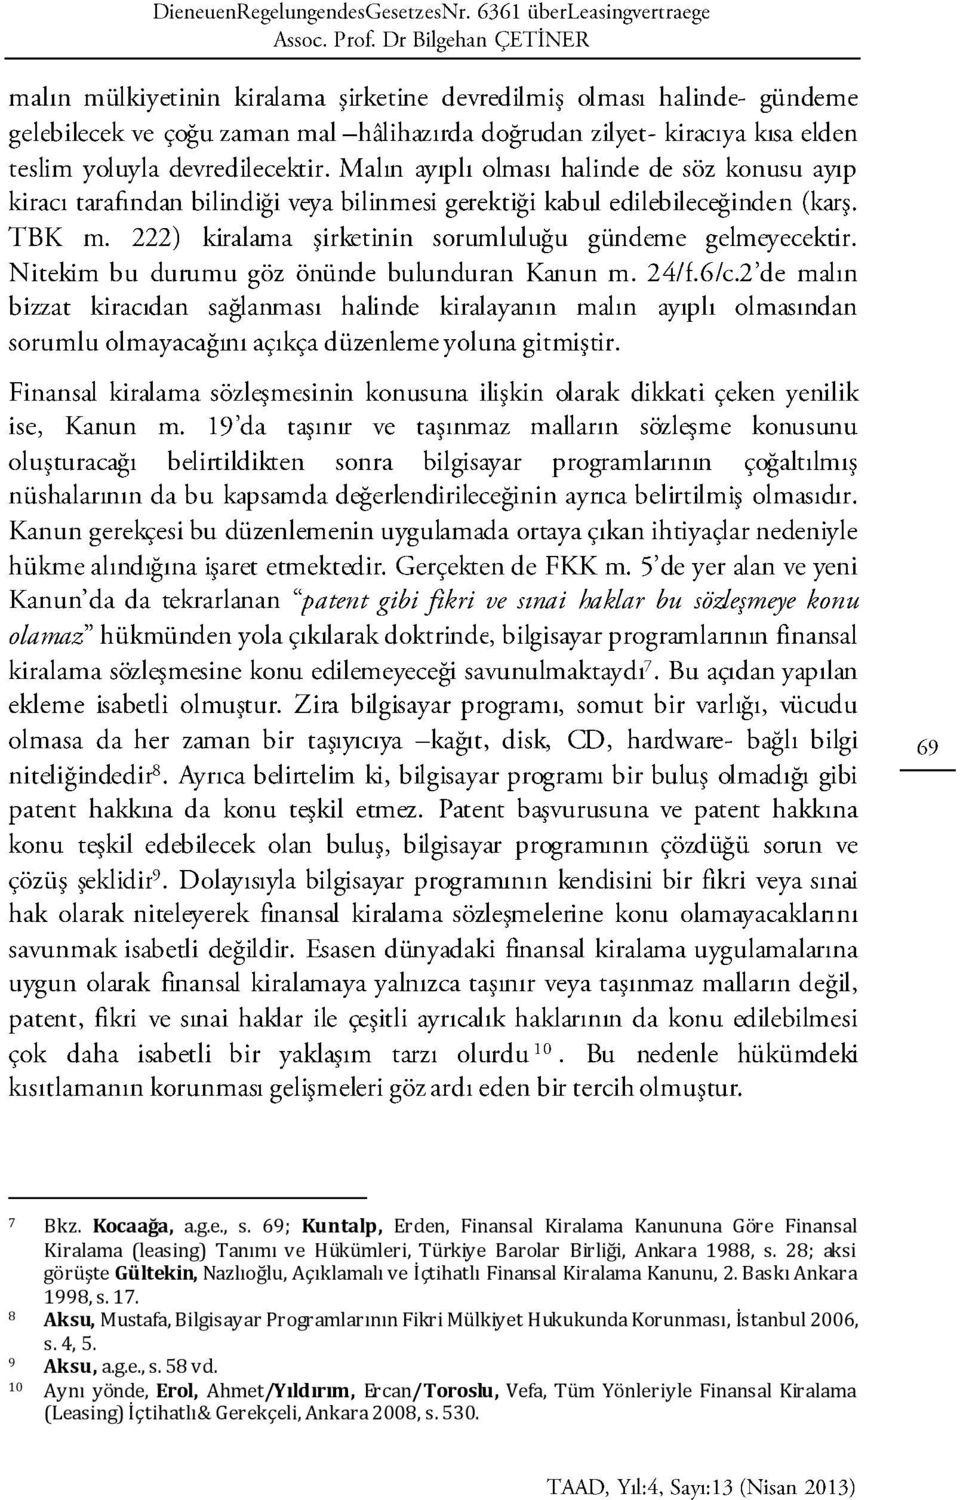 s. 28; aksi görüşte Gültekin, Nazlıoğlu, Açıklamalı ve İçtihatlı Finansal Kiralama Kanunu, 2. Baskı Ankara 1998, s. 17.